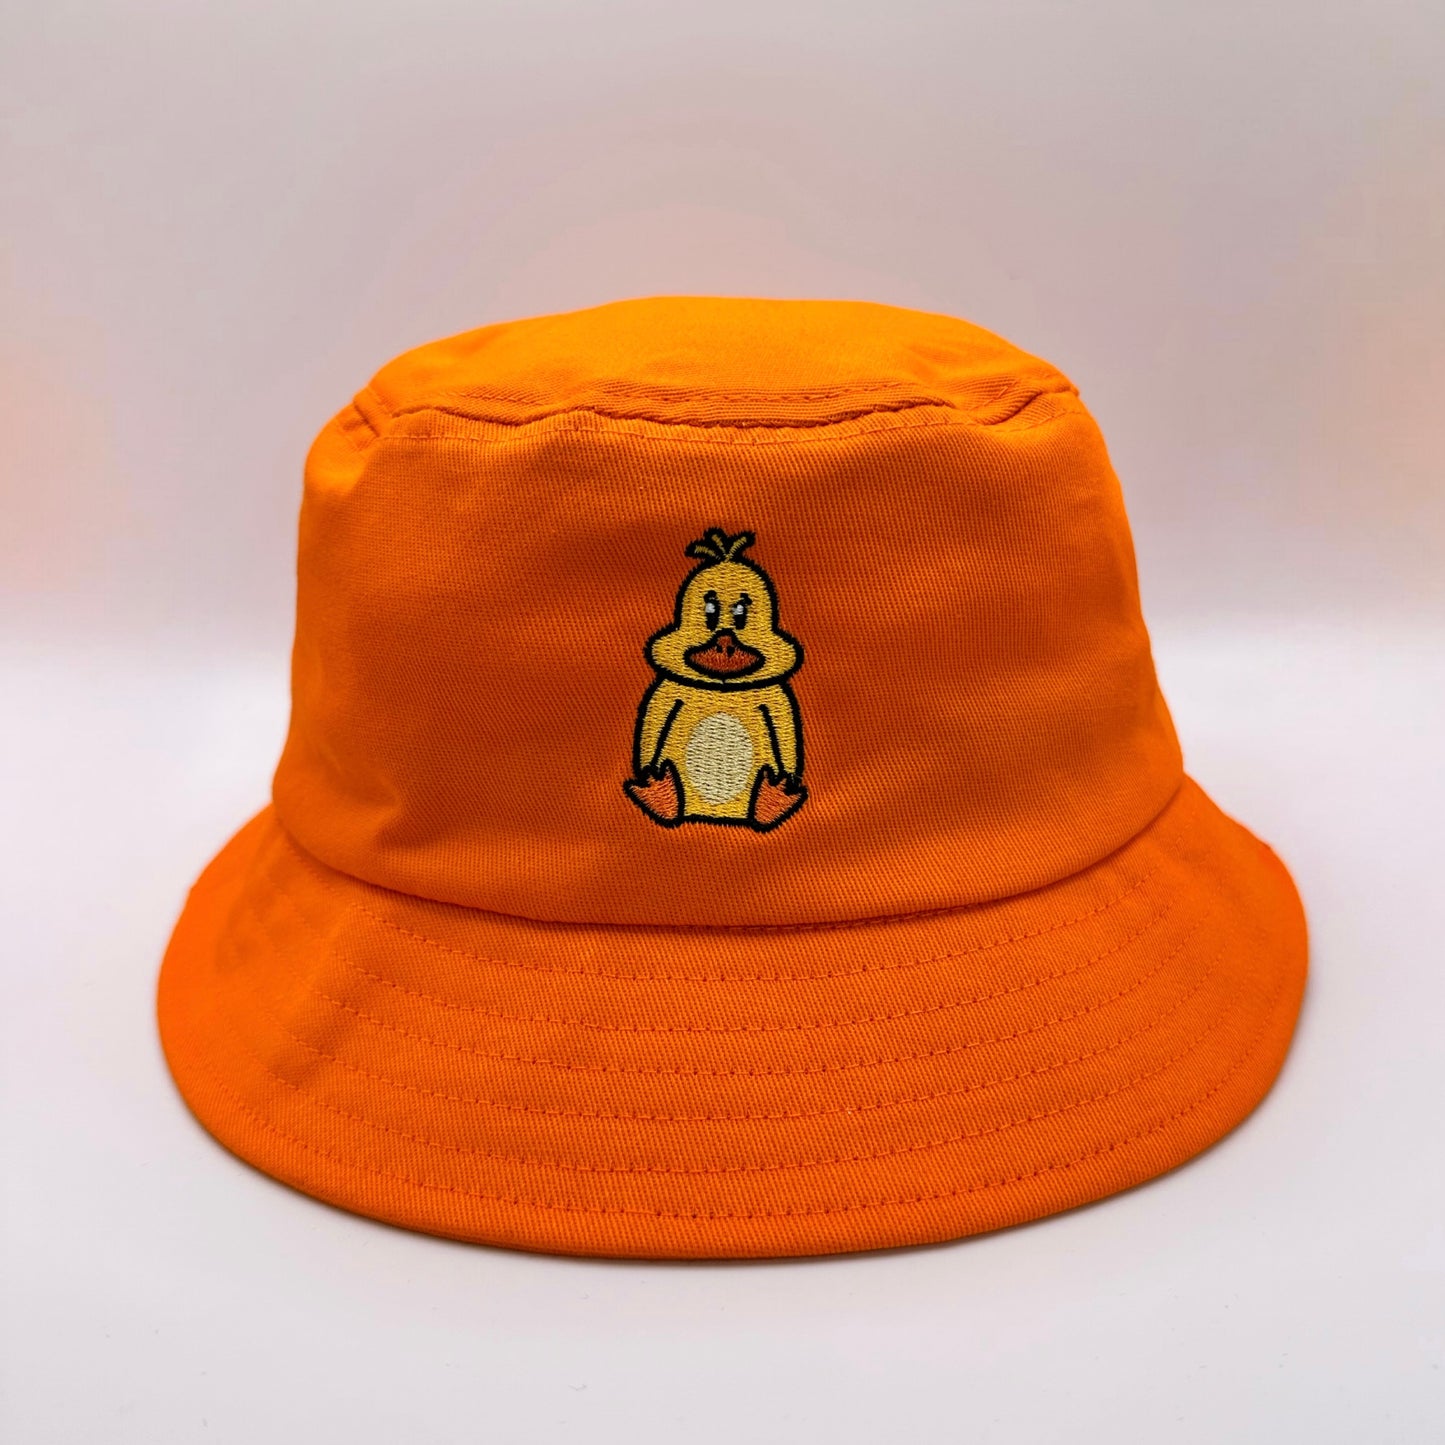 The Official Duckett's Bucket Hat - Orange